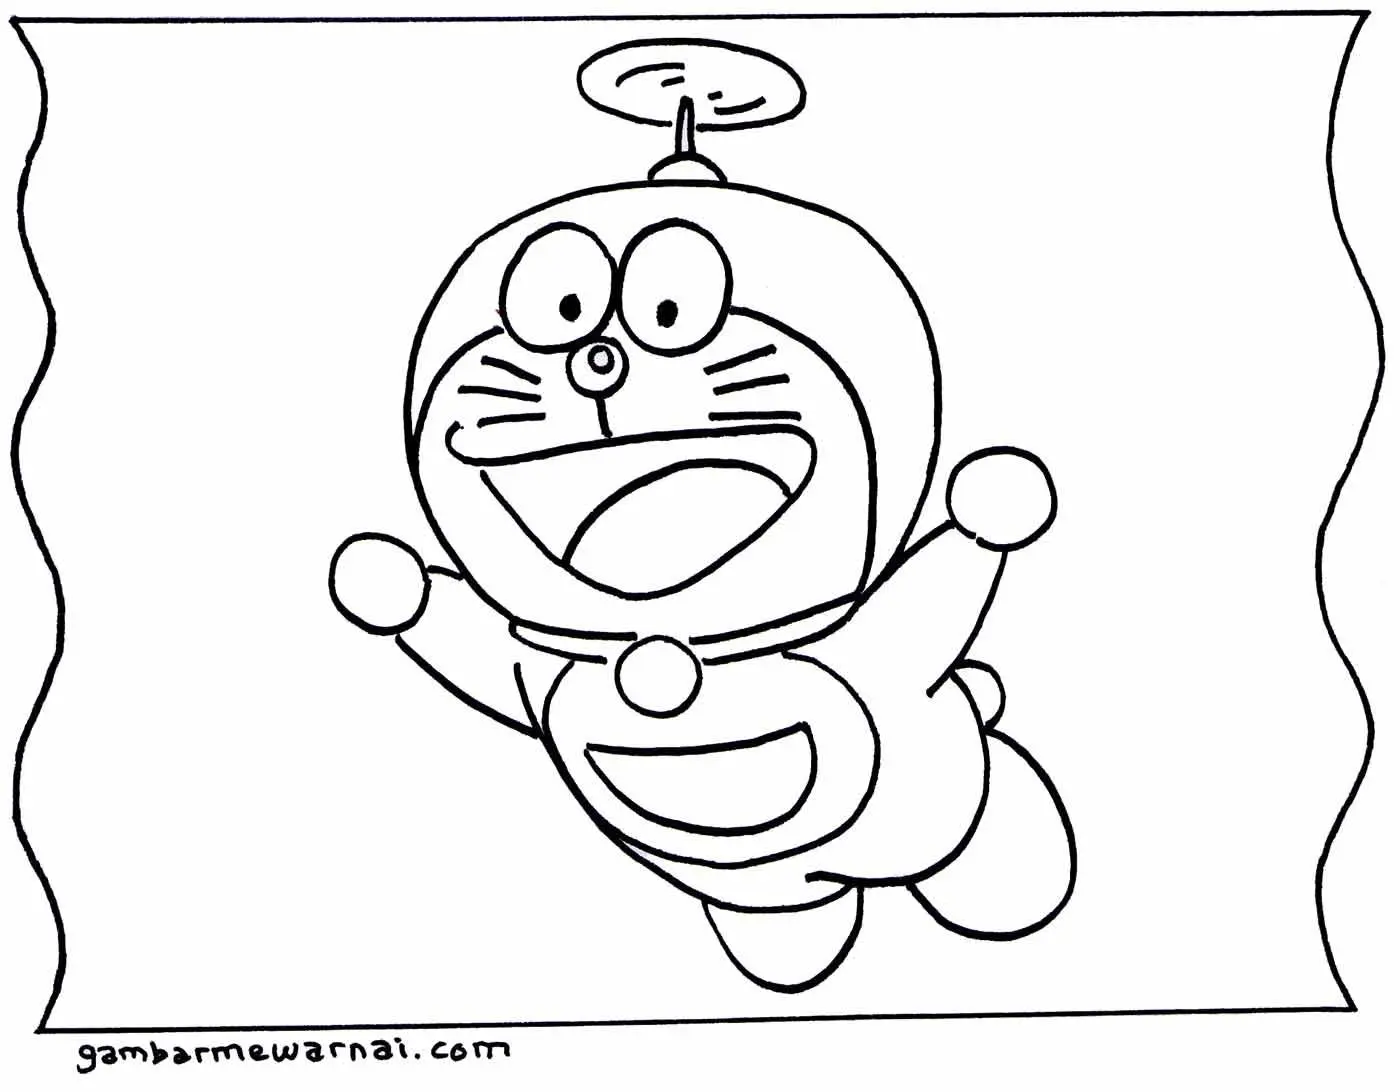 10 Contoh Gambar Mewarnai Doraemon yang Mudah Dan Seru untuk Anak-Anak